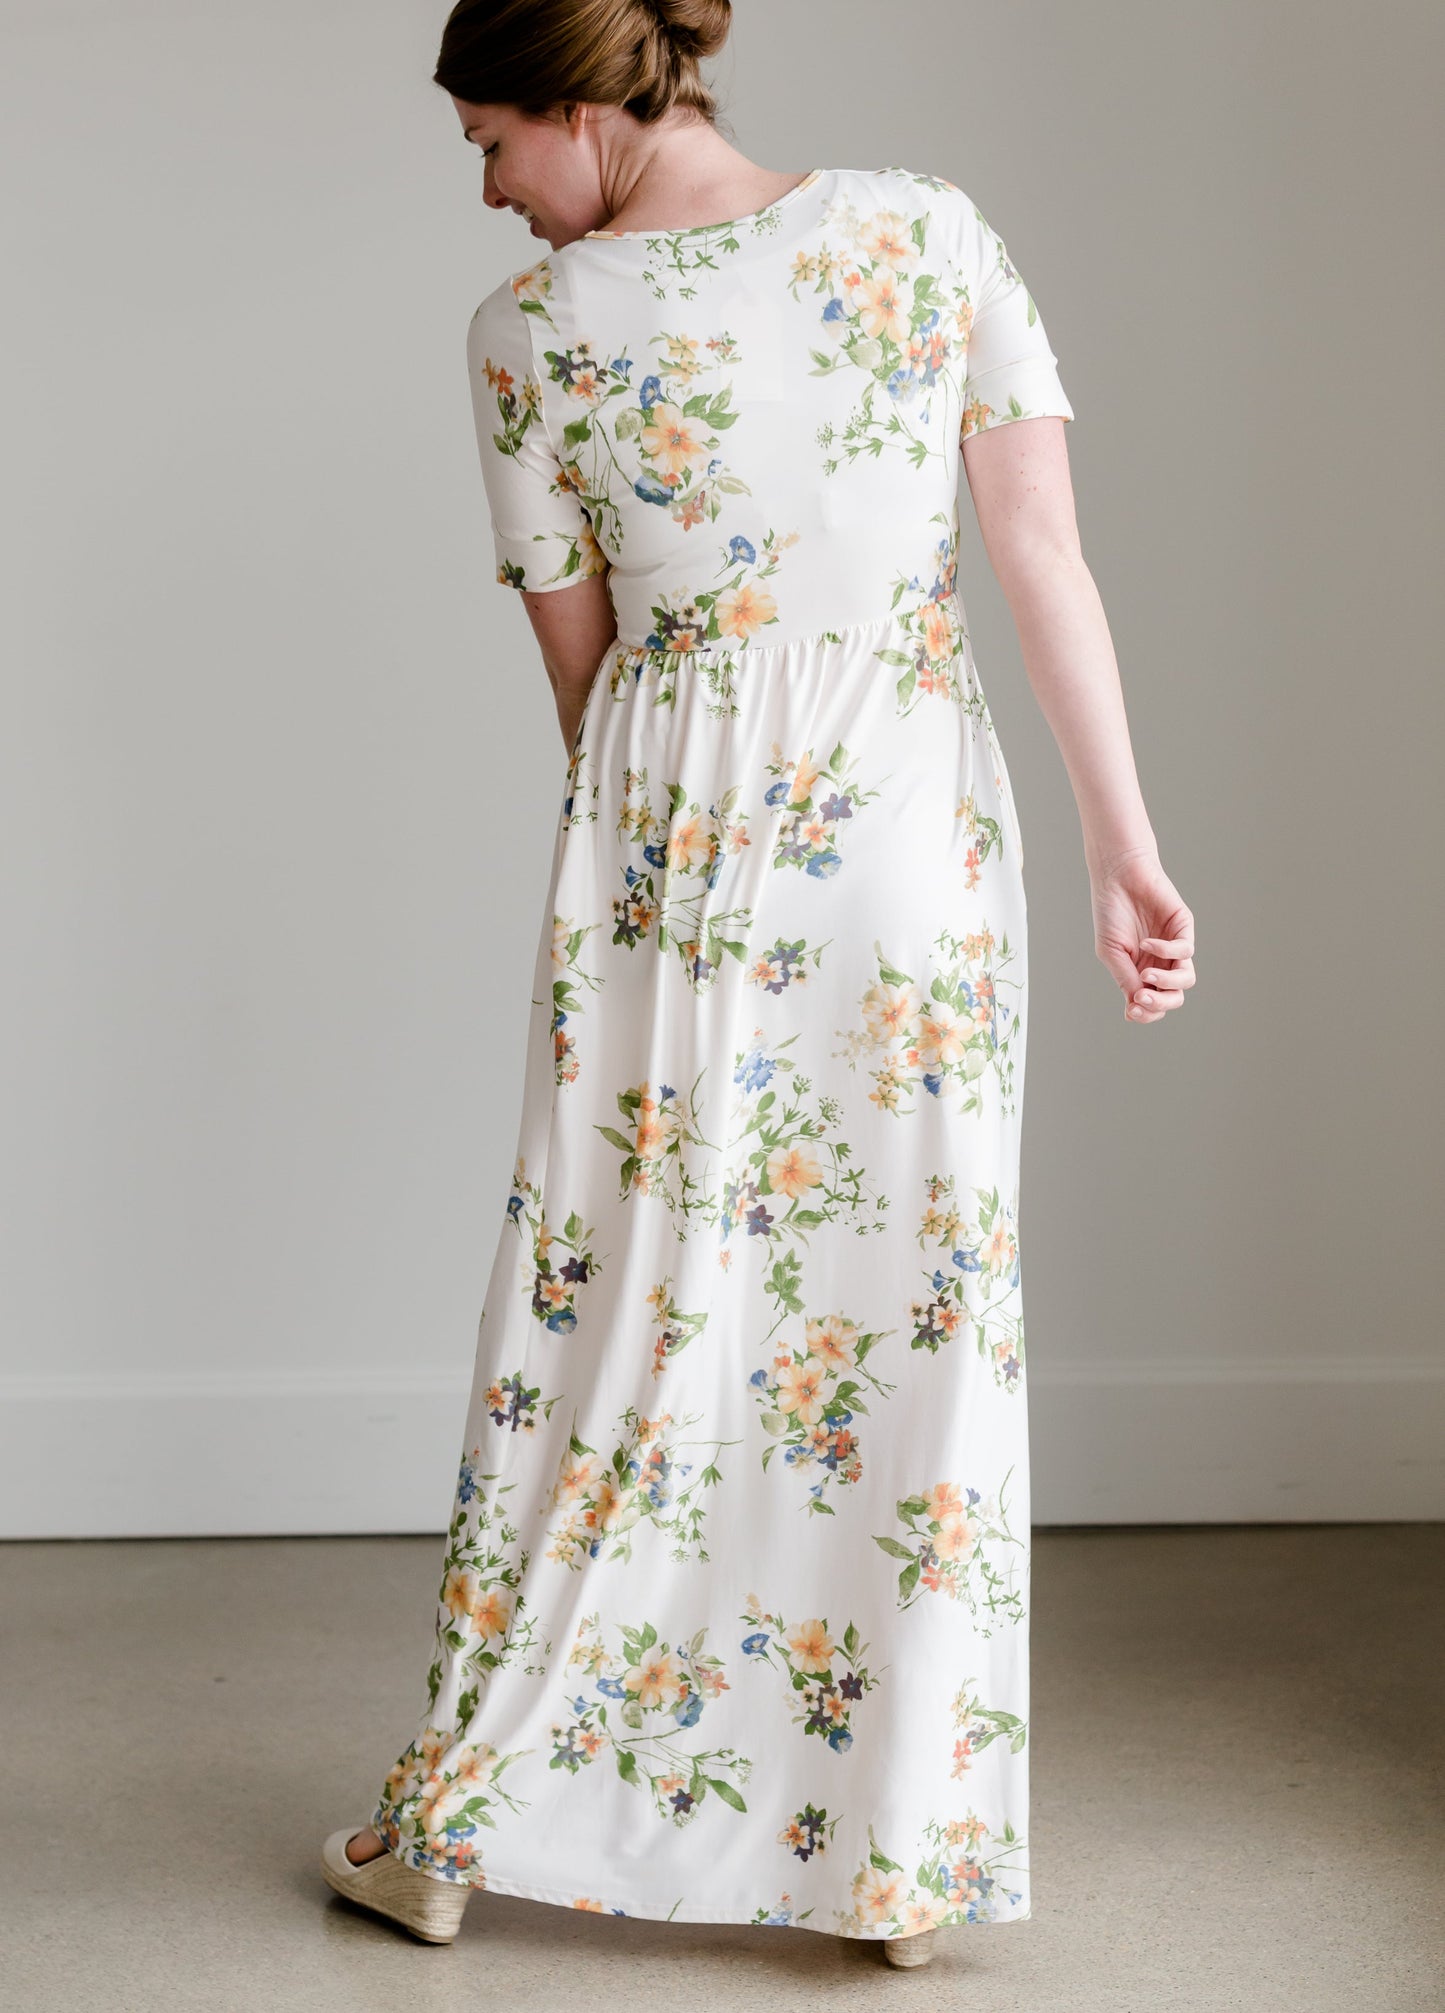 Callie Floral Maxi Dress - FINAL SALE Dresses